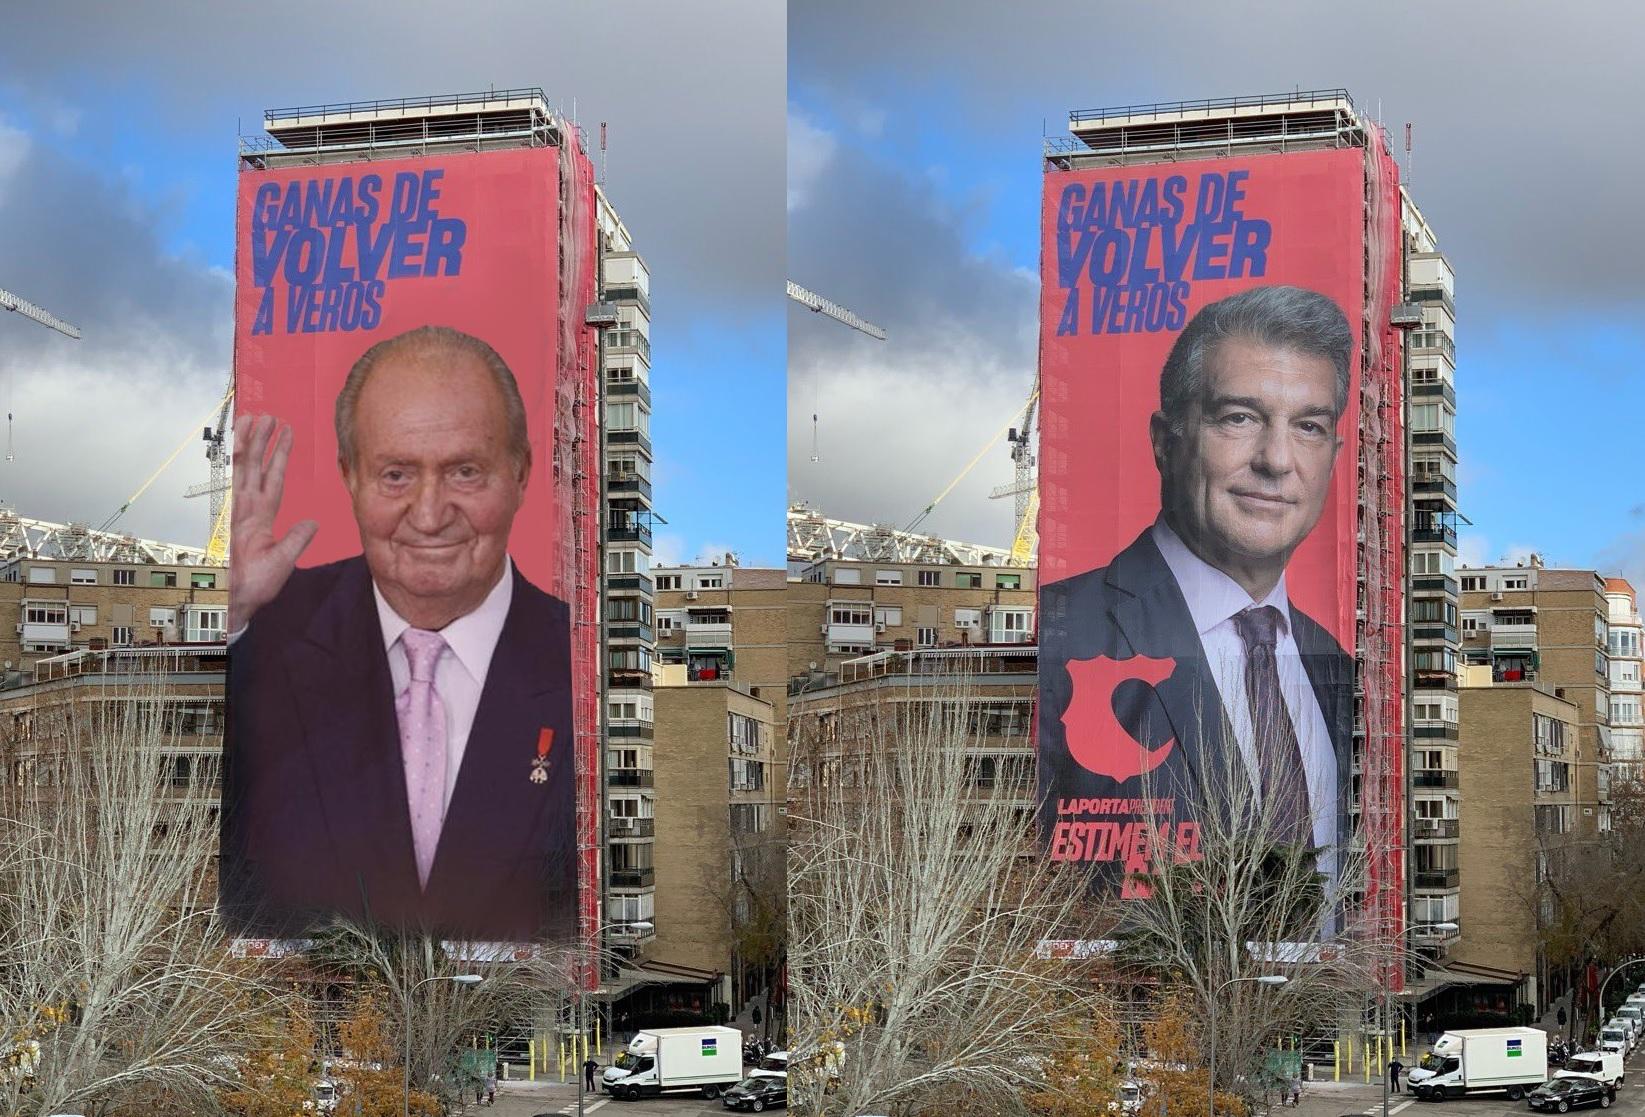 Bromas con la campaña publicitaria de Joan Laporta en Madrid. Twitter